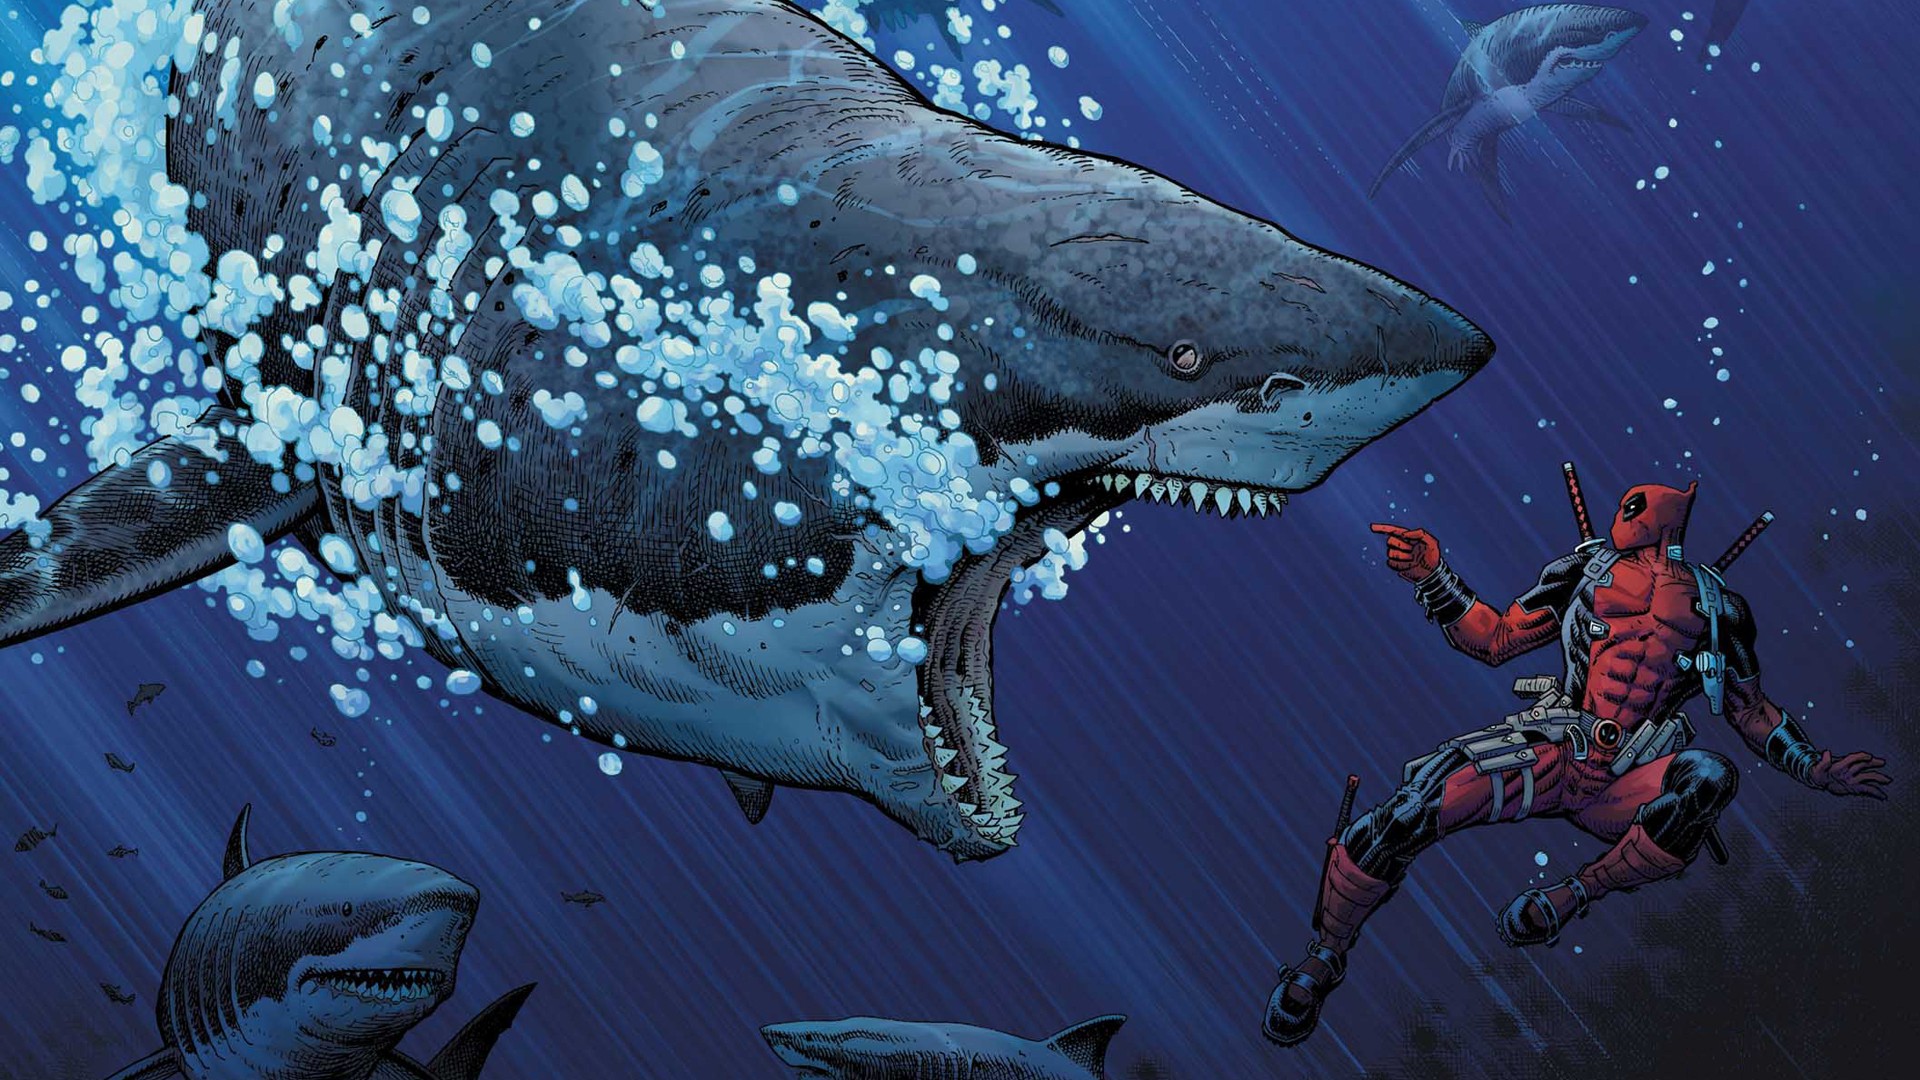 General 1920x1080 Marvel Comics shark animals Deadpool fantasy art bubbles hero